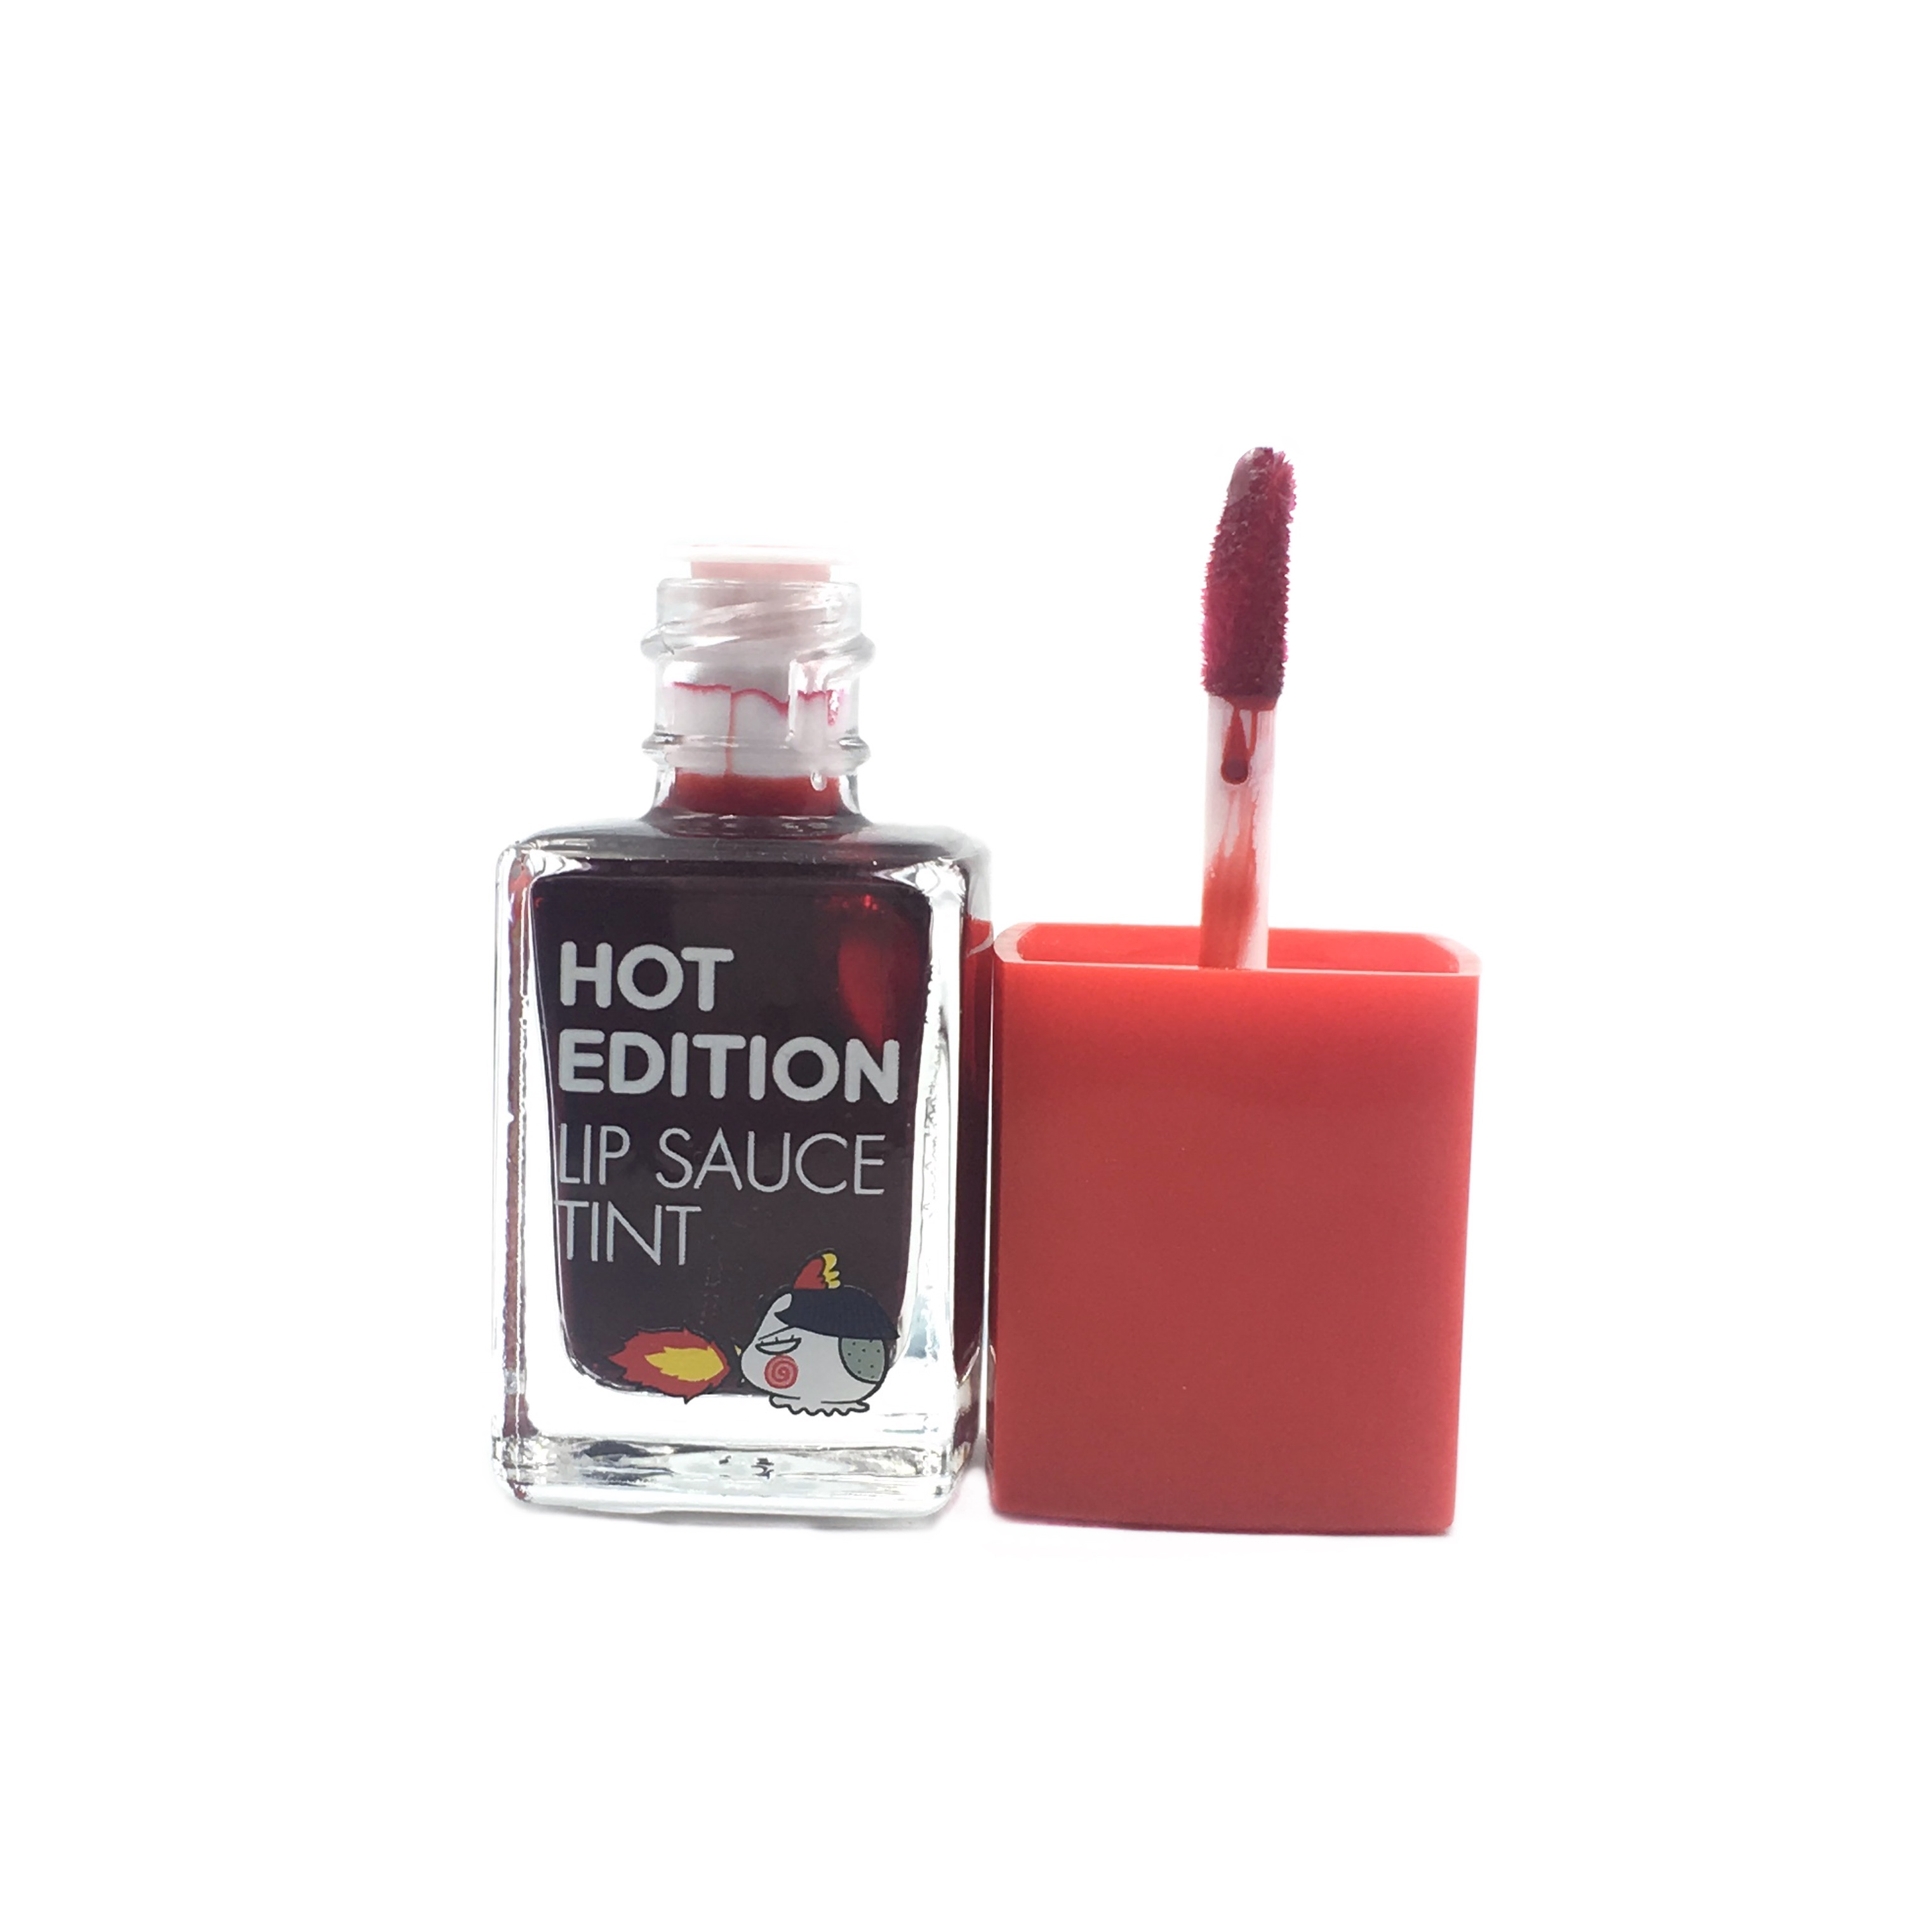 Tony Moly 01 Hot Edition Lip Sauce Tint Lips